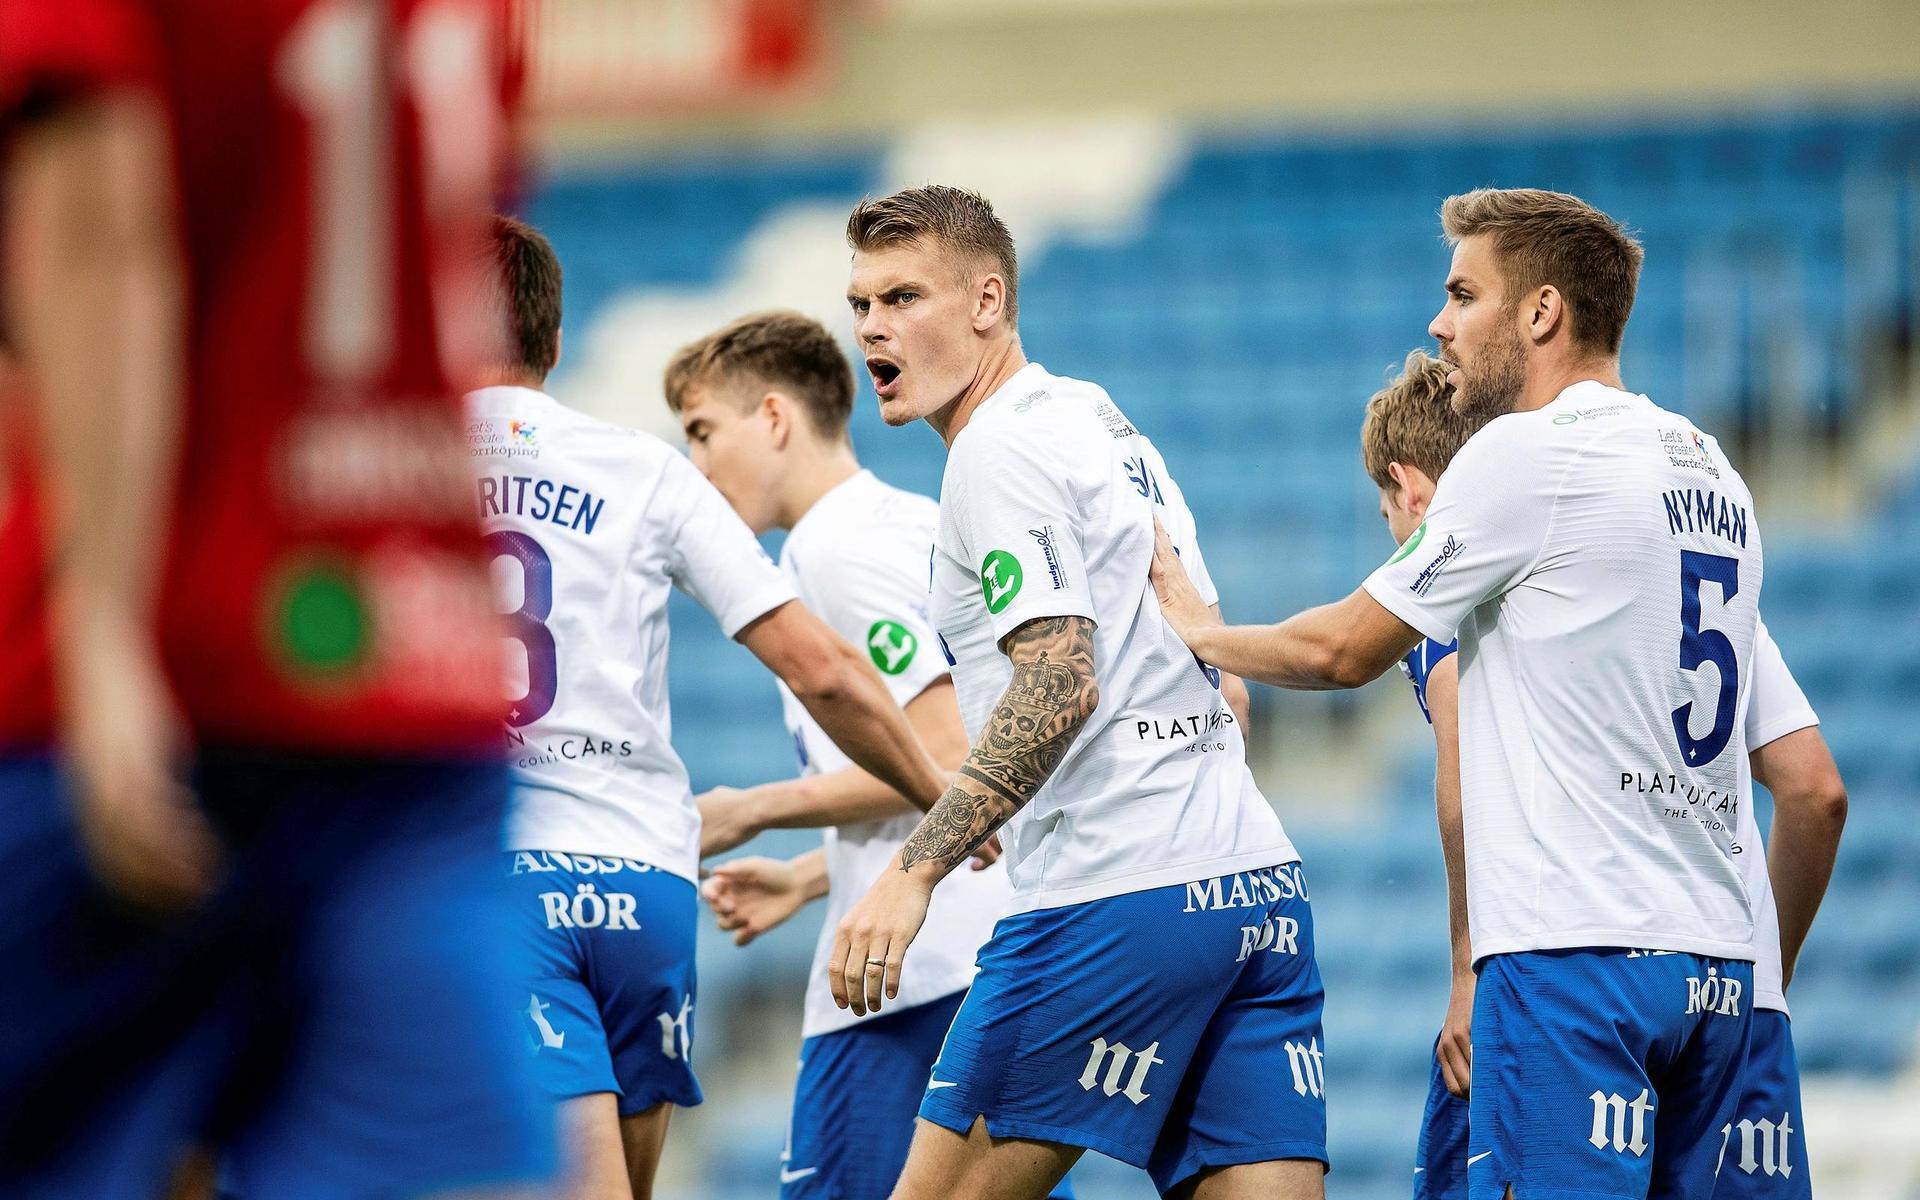 ”Vi kom in jävligt bra i säsongen, sedan fick vi en svacka som varade alldeles för länge för att vi skulle kunna kämpa om guldet”, konstaterar Eric Smith om IFK Norrköpings säsong.